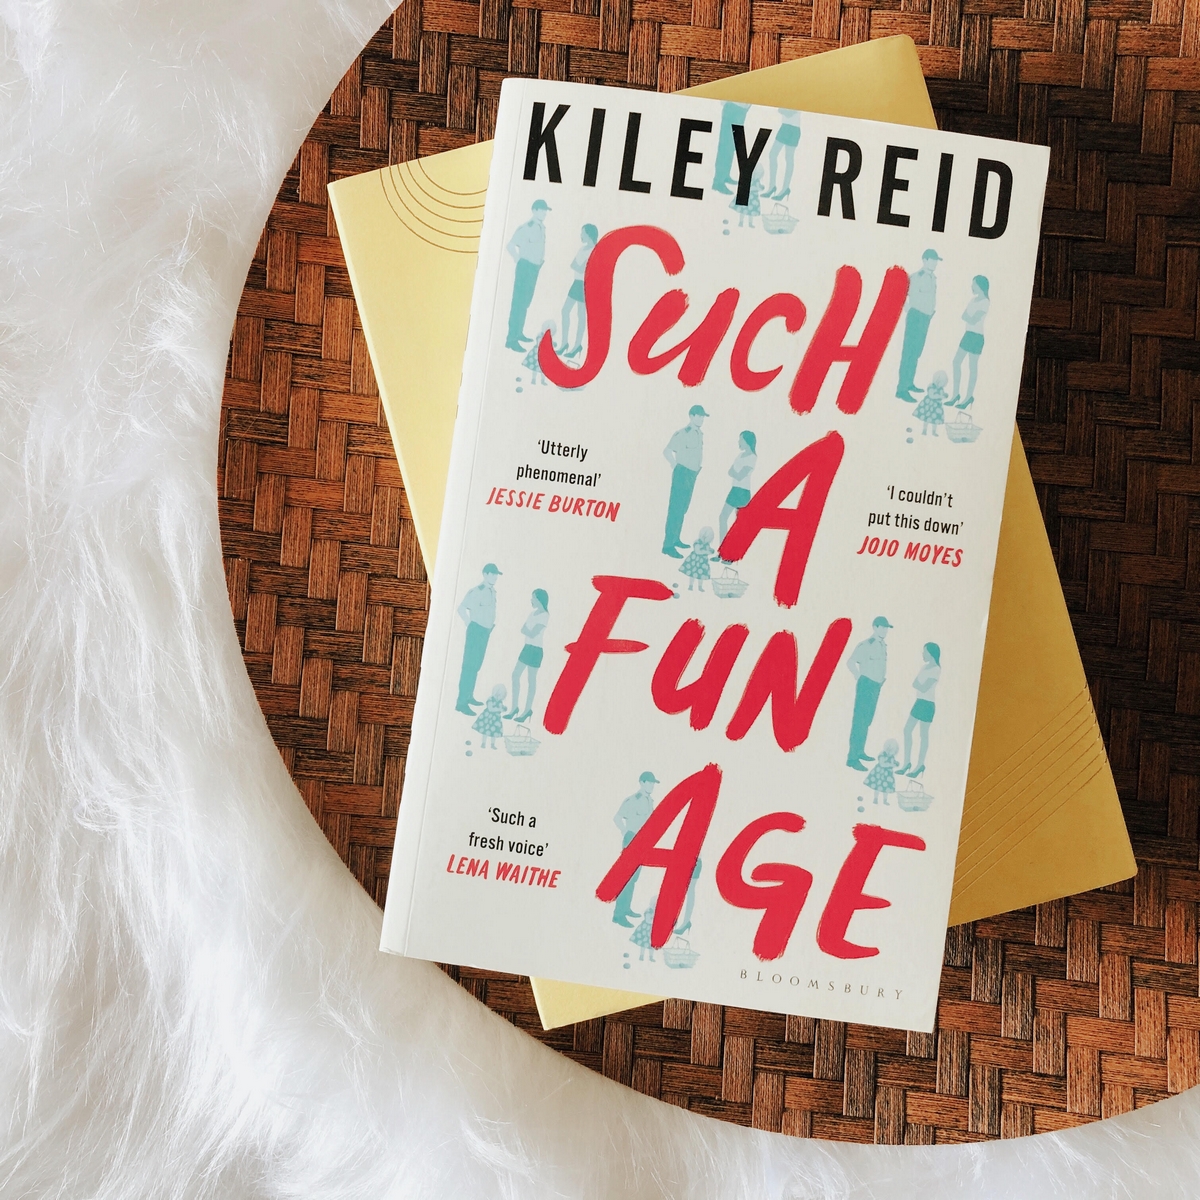 Such a Fun Age de Kiley Reid é leitura de fevereiro do nosso clube do livro. A foto mostra o livro sobre uma mesa.